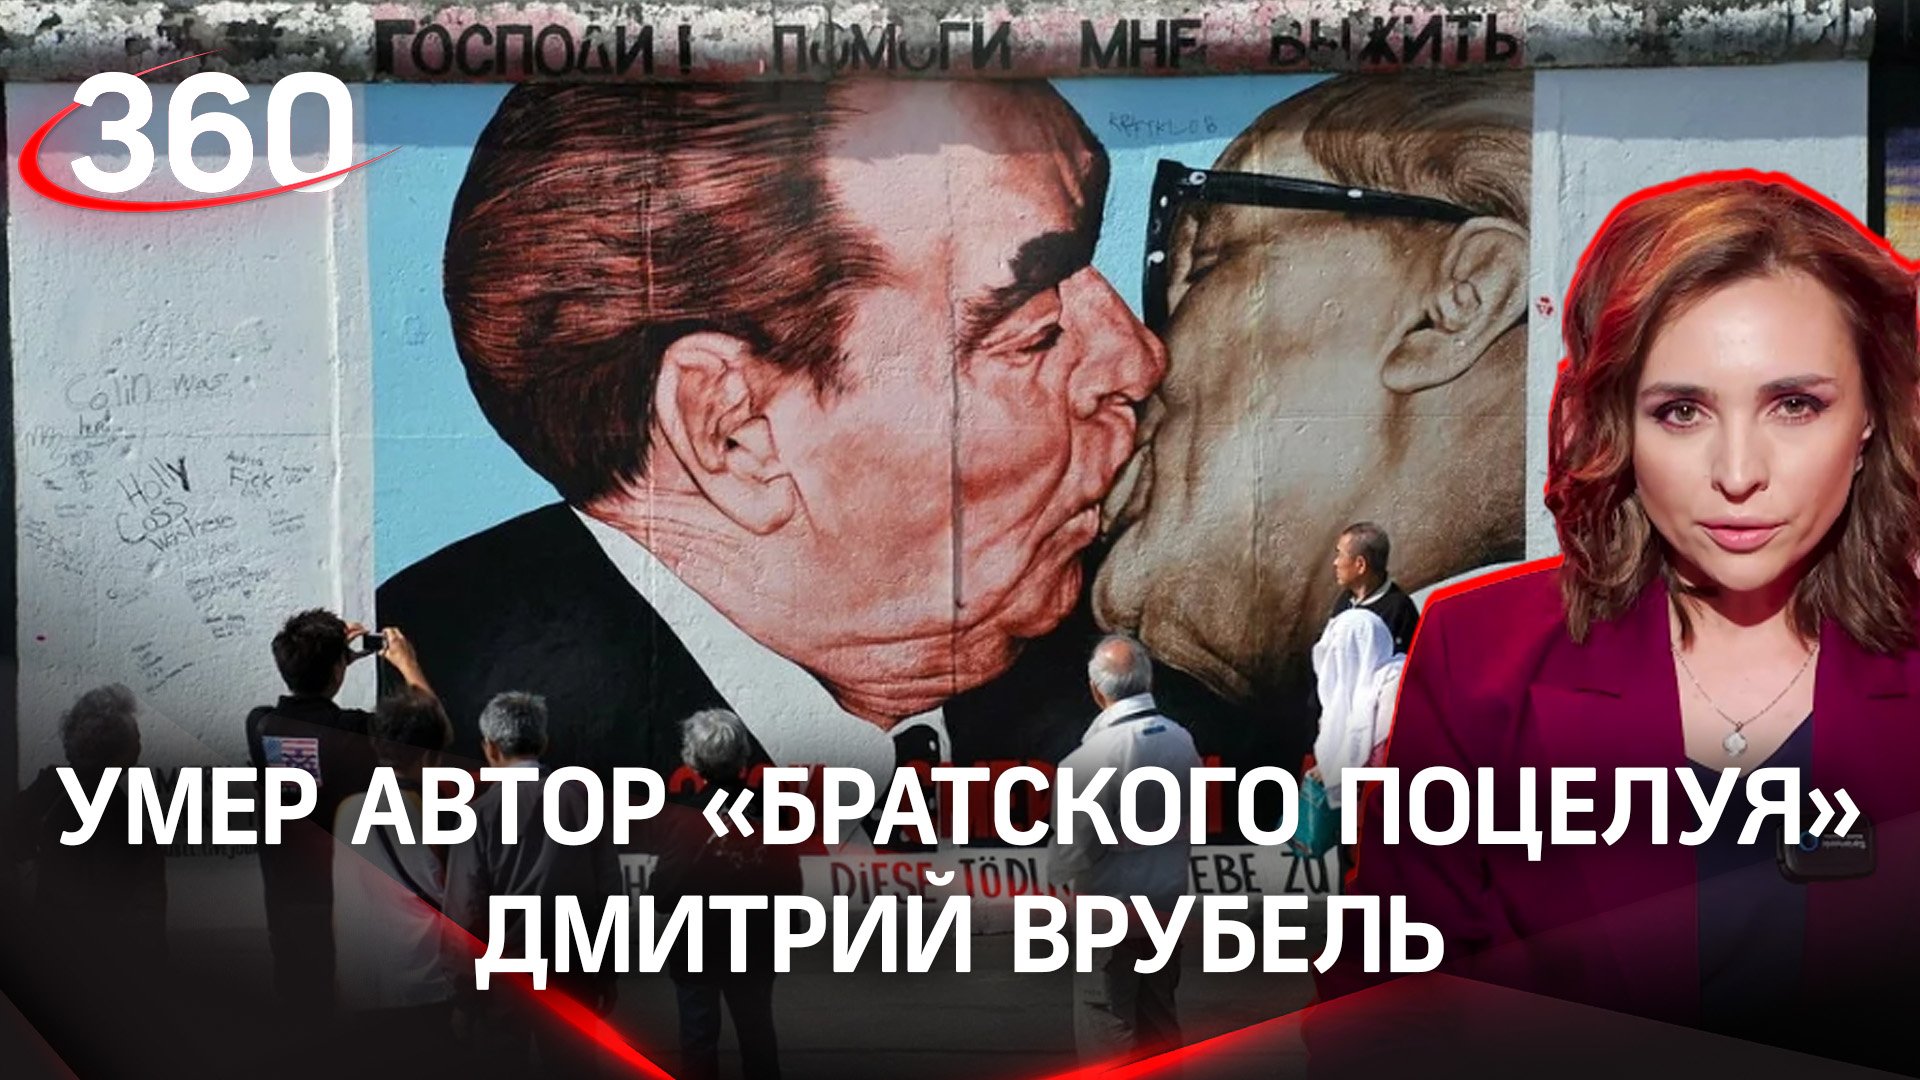 Врубель, Брежнев поцелуй: как мы это запомним